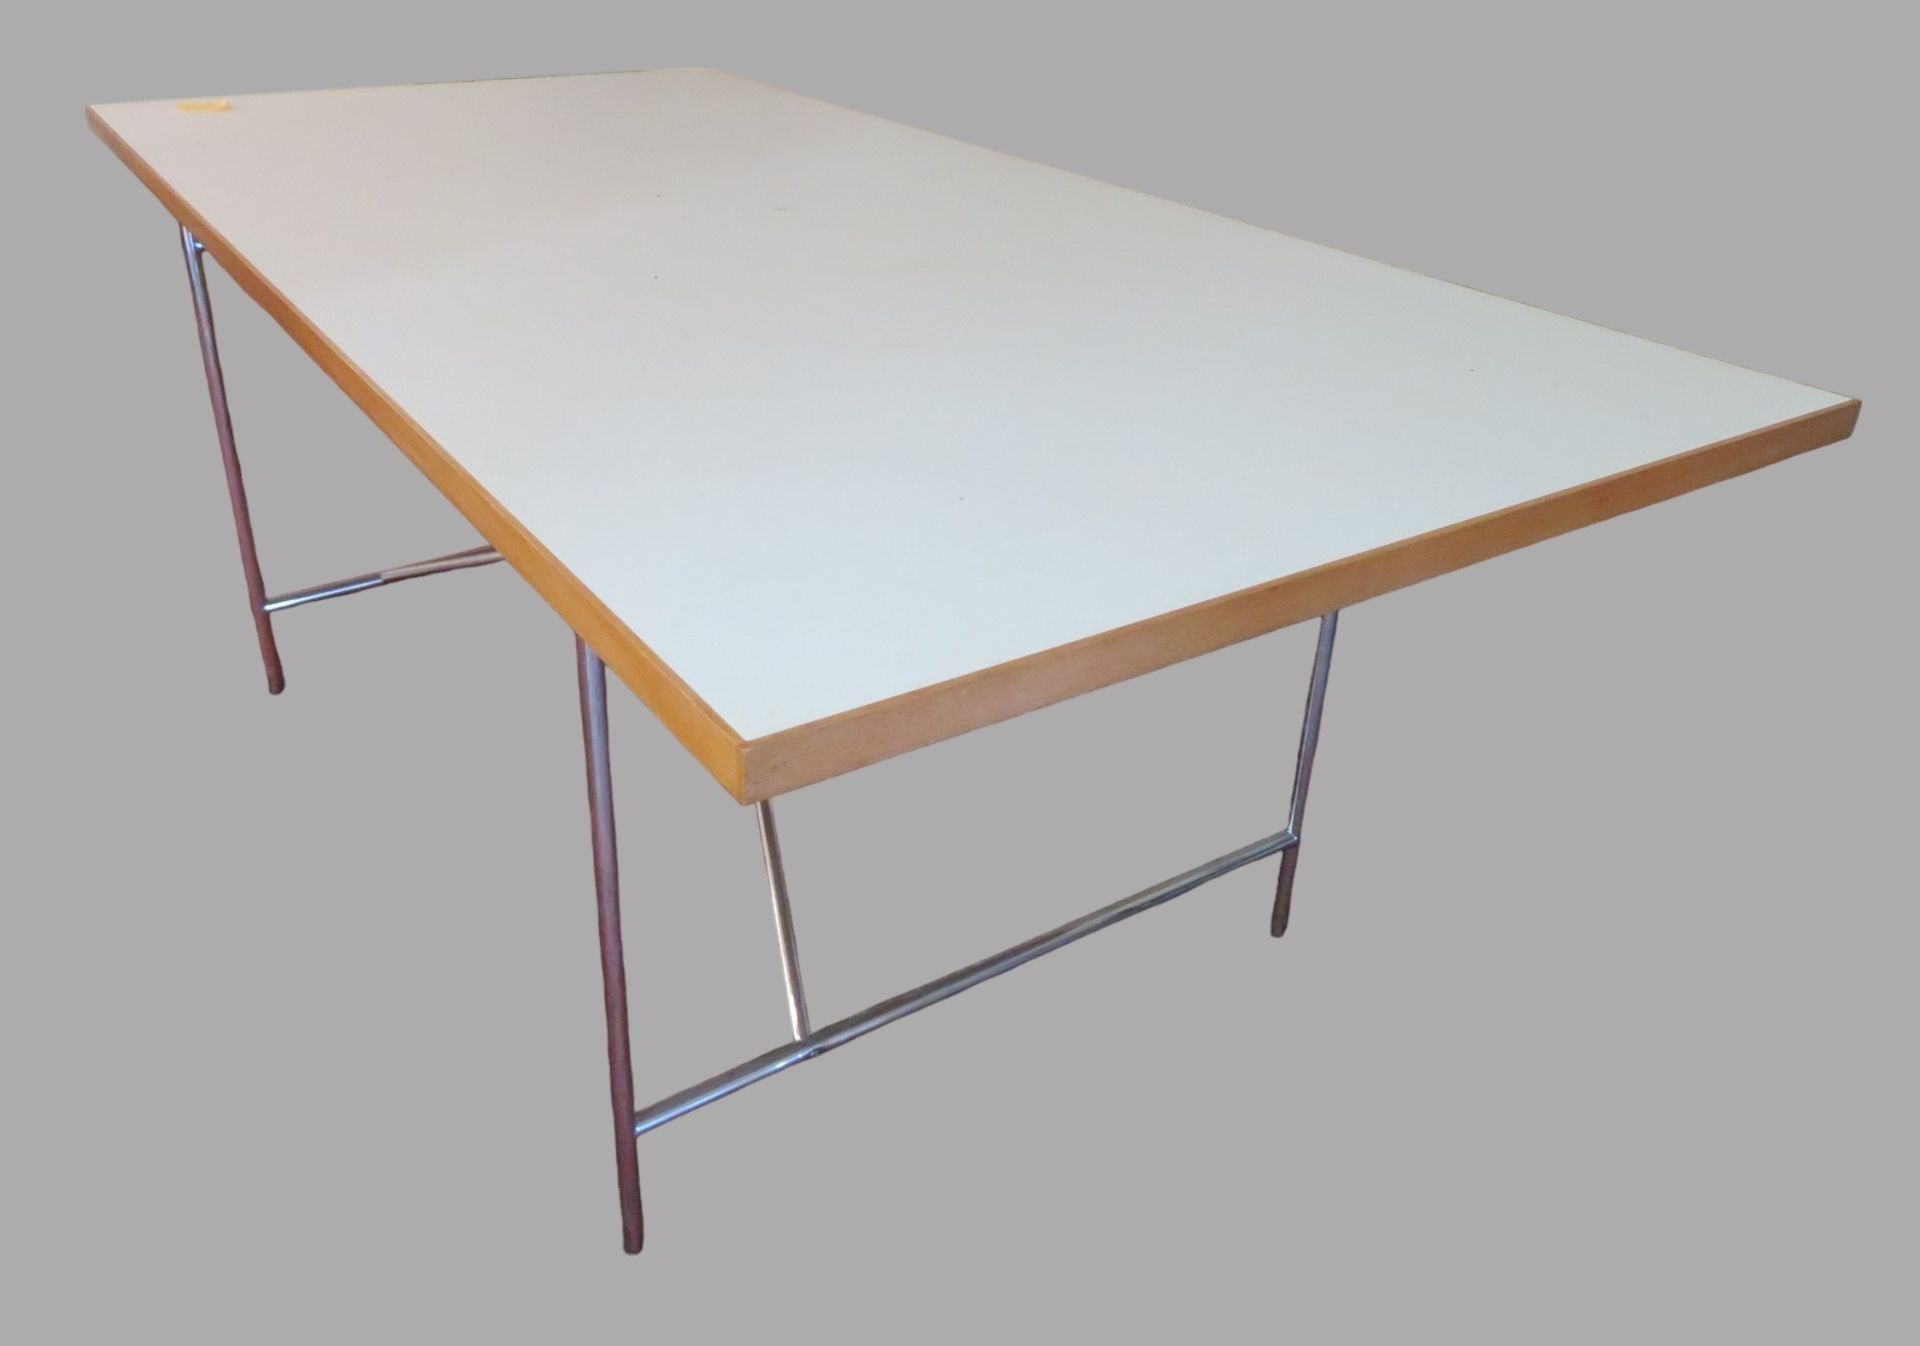 Designer Tisch, Entwurf Egon Eiermann, 1953, Chromgestell, weiße Platte, 69 x 90 x 180 cm.